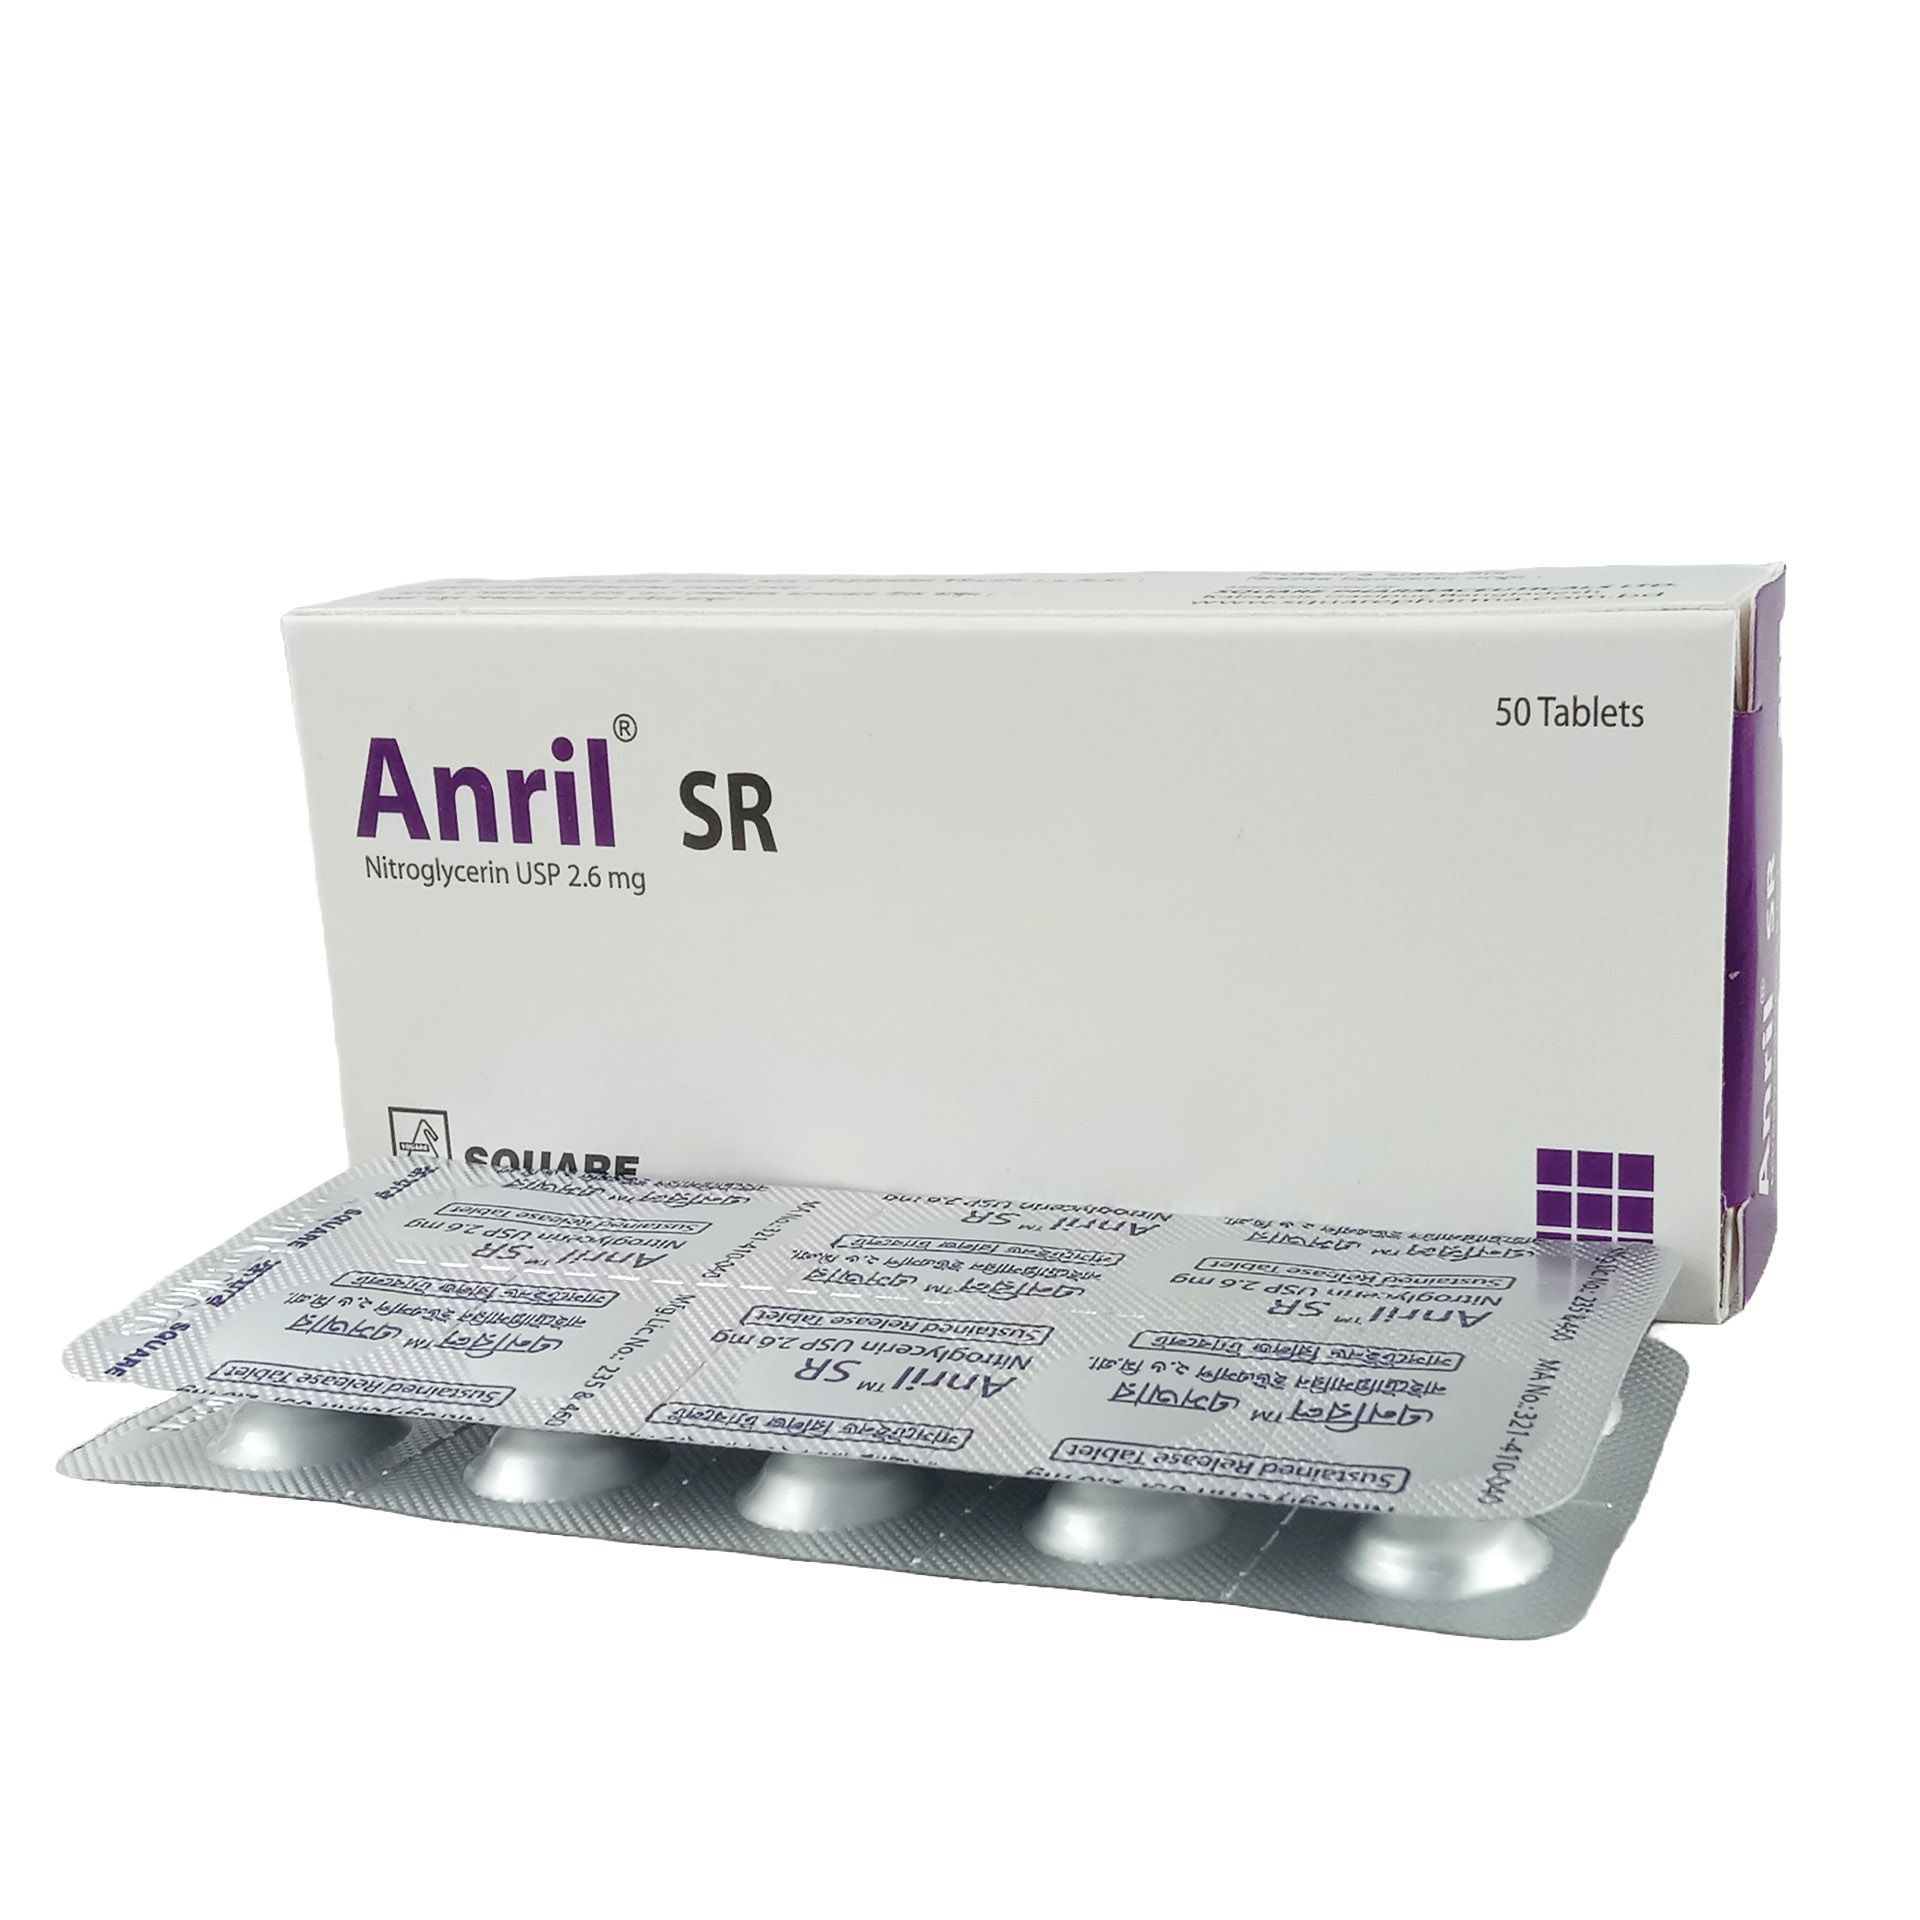 Anril SR 2.6mg Tablet